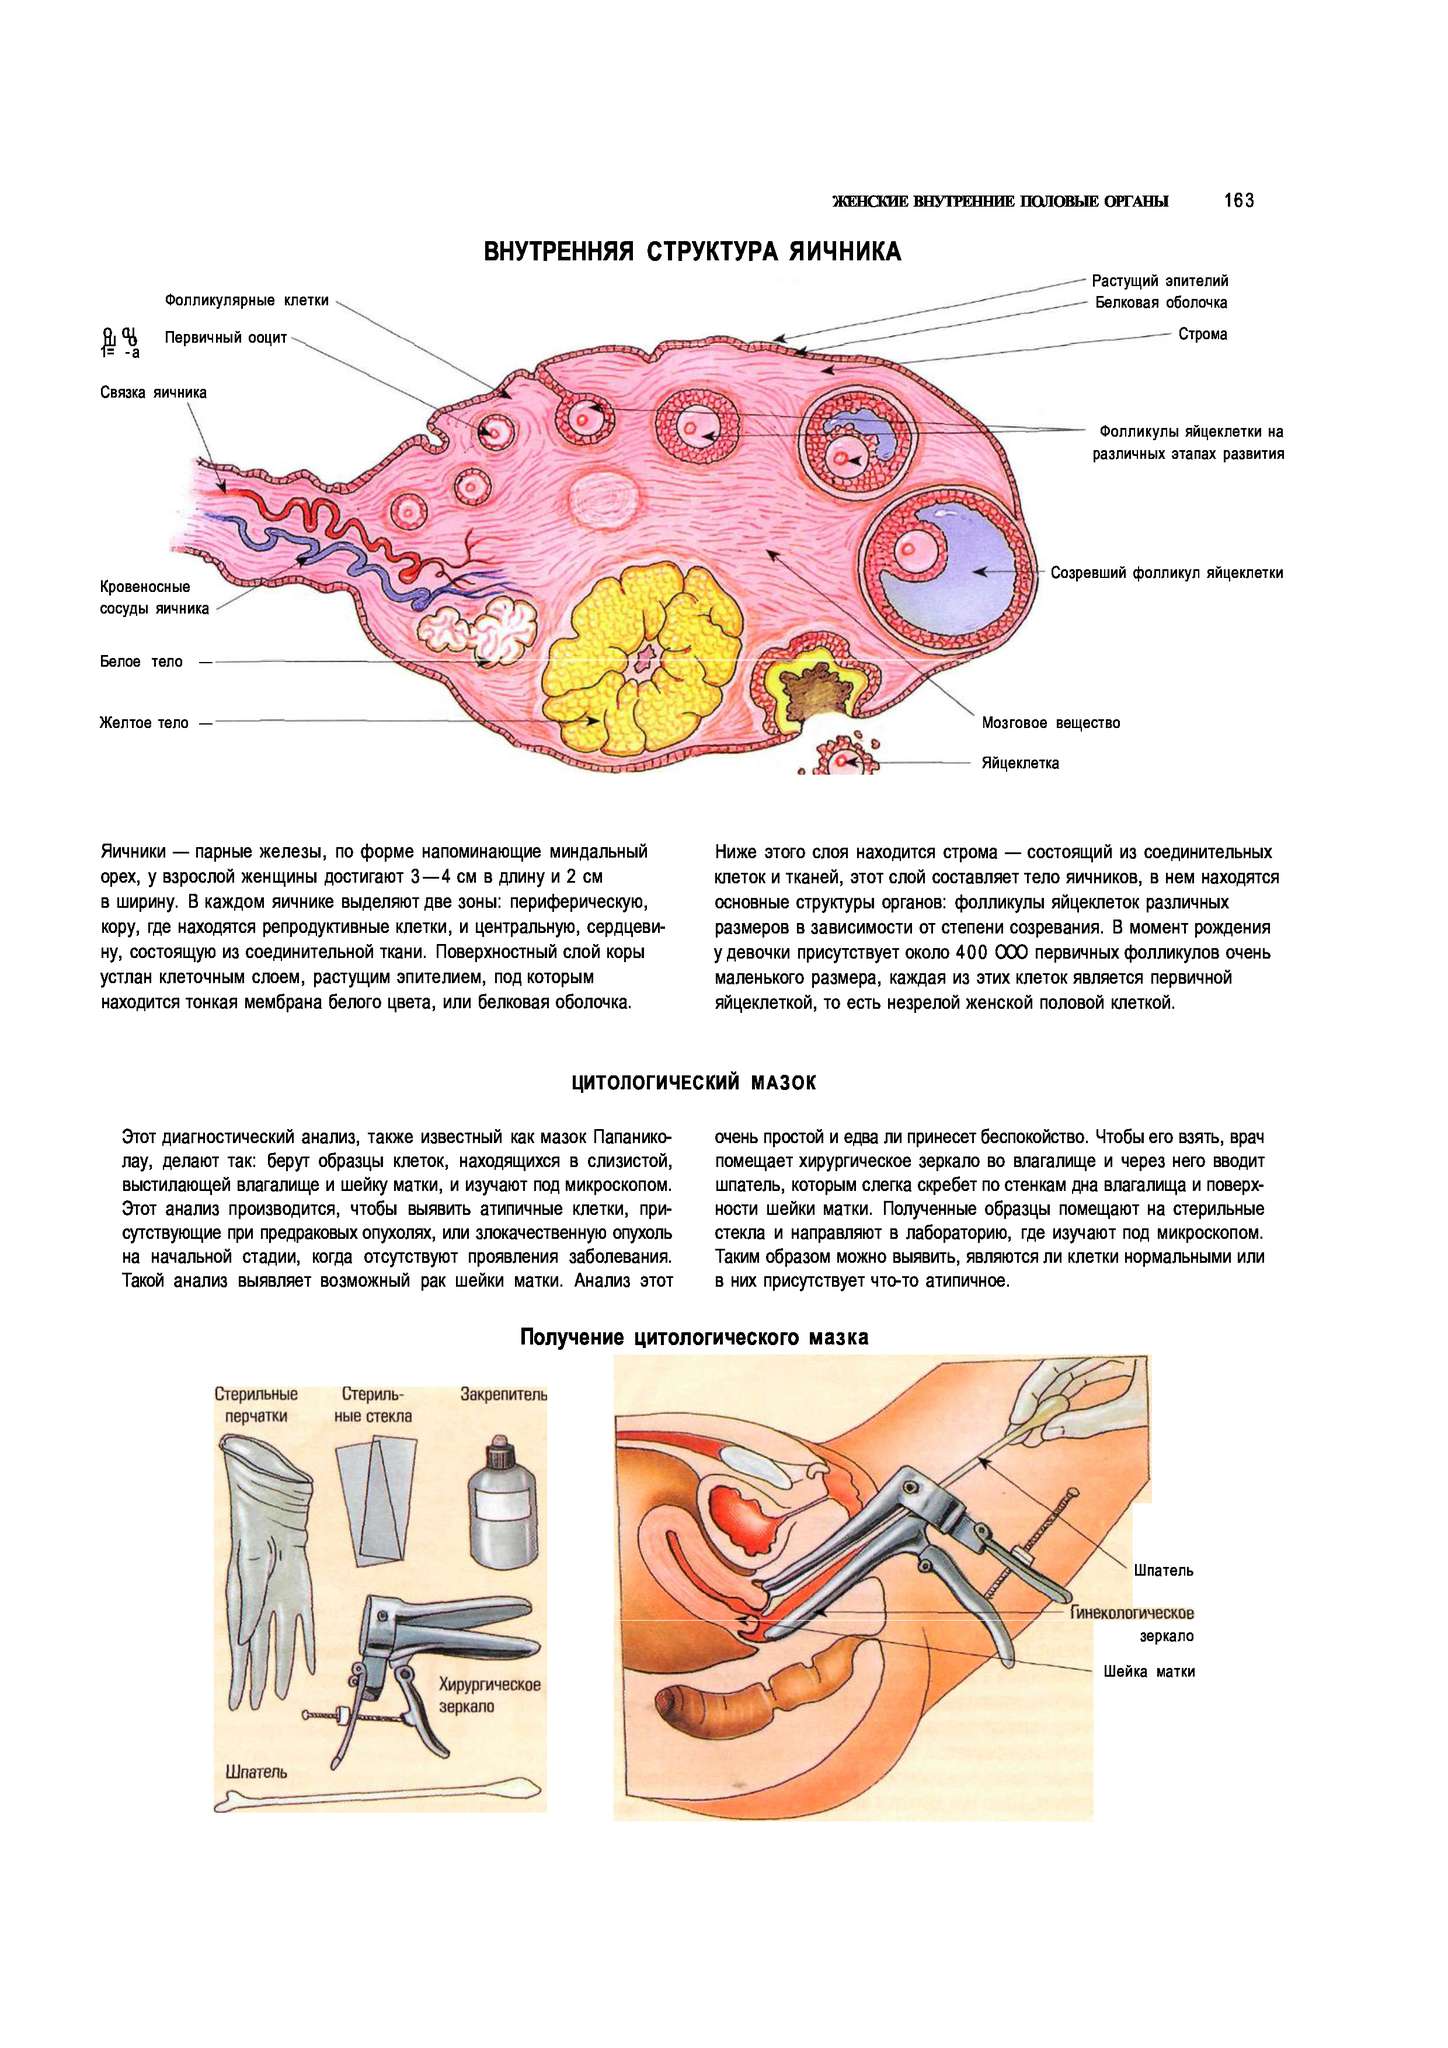 Женская половая система строение и функции. Яичники расположение строение функции. Женская половая система яичник анатомия строение. Внутреннее строение яичника анатомия. Женские половые органы анатомия яичник.